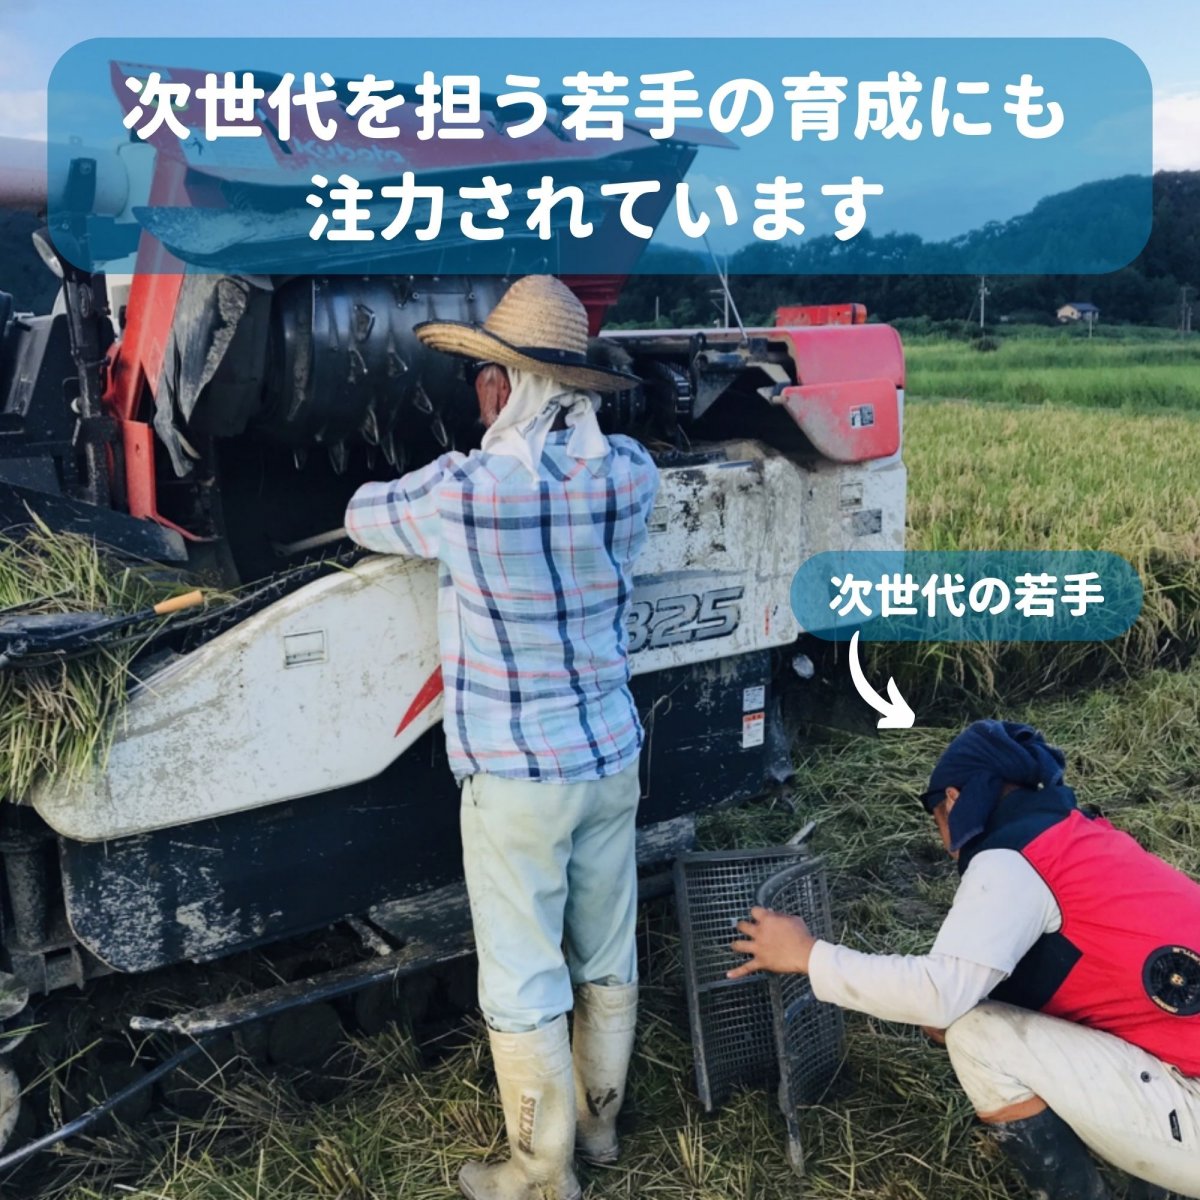 【１００００円】福留さん応援チケット 農家レスキュー